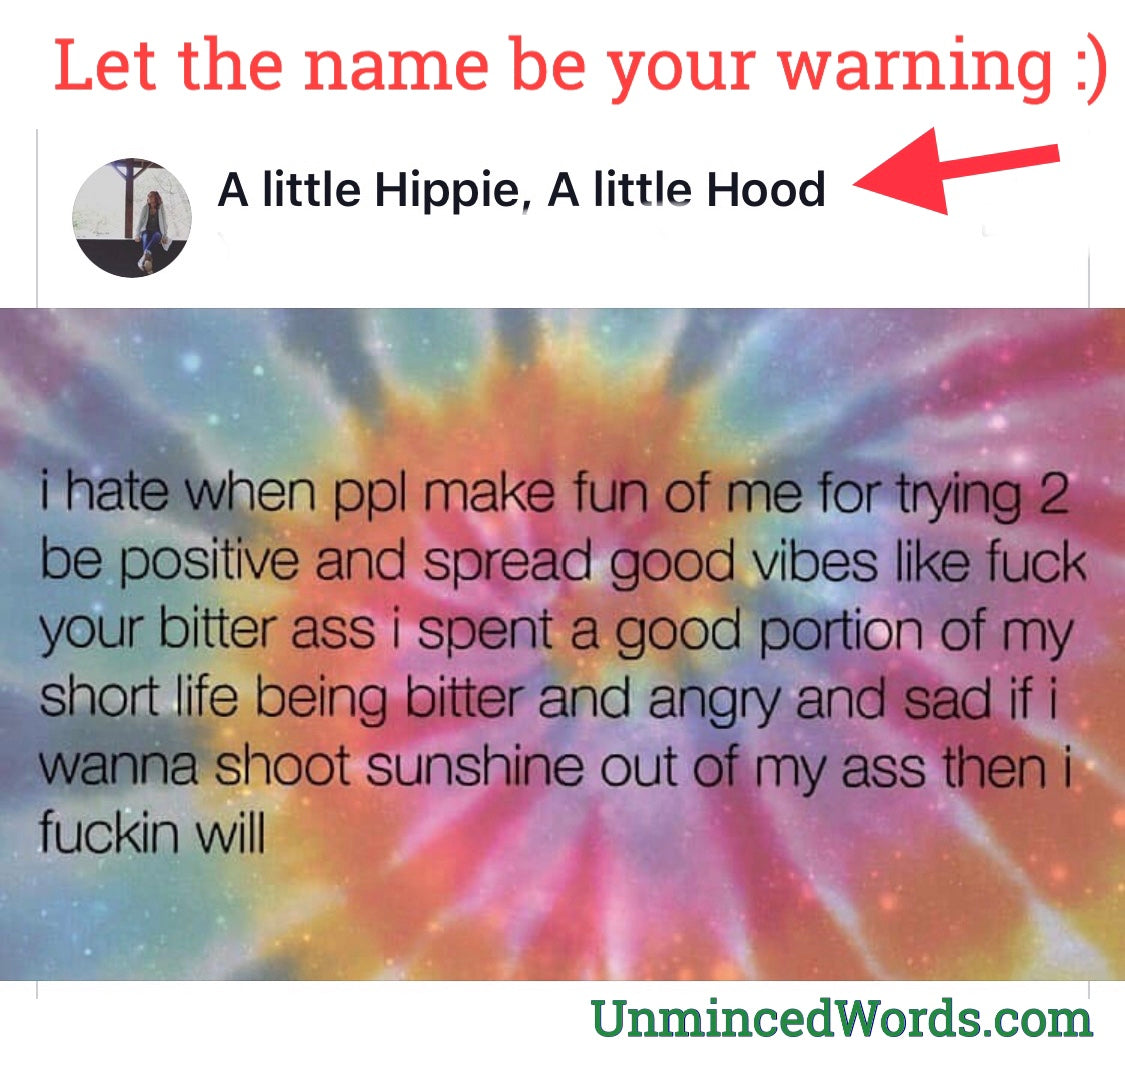 A little hippie, A little hood